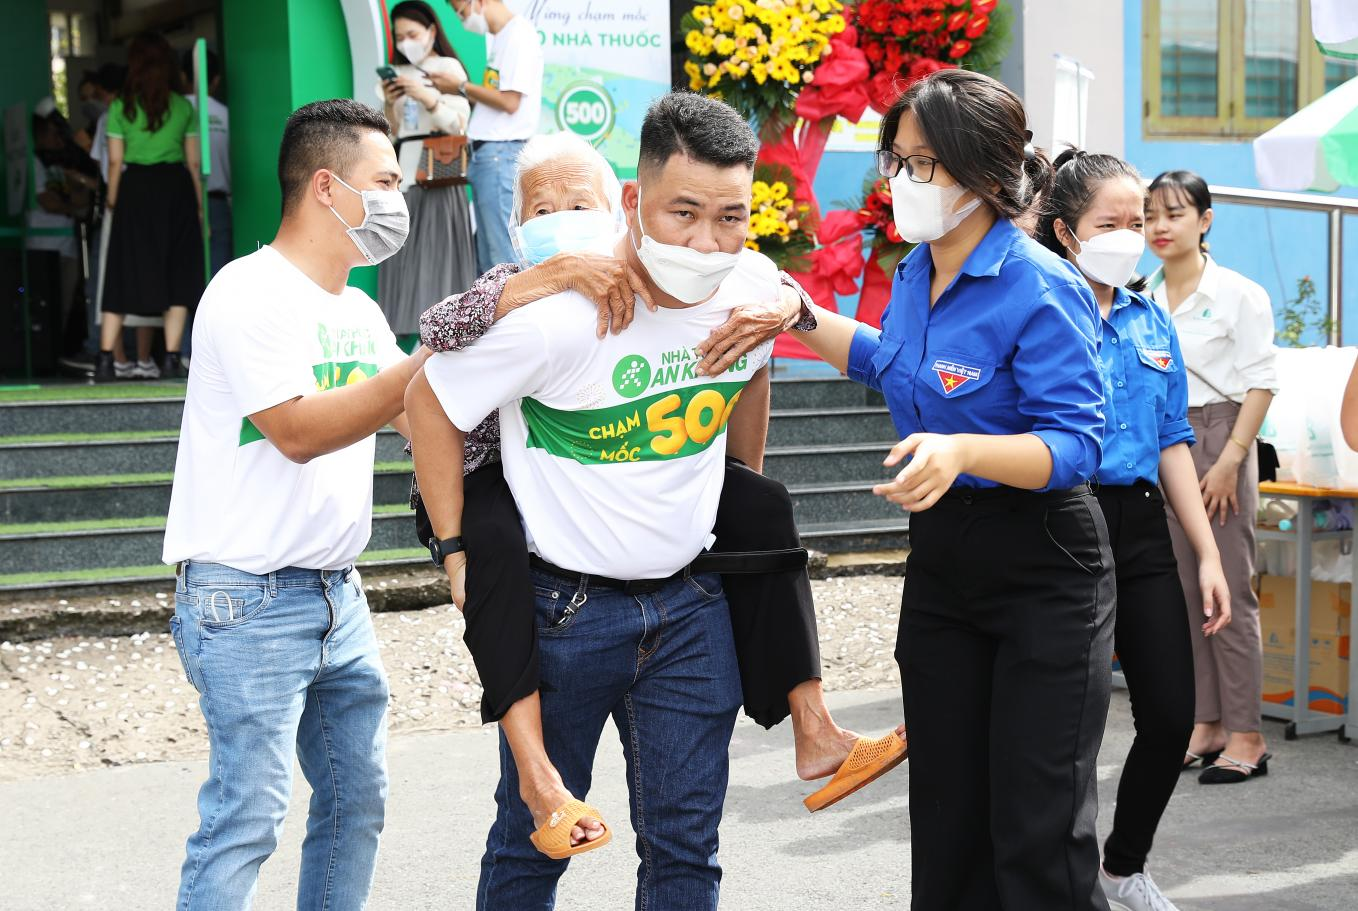 Hàng trăm người khó khăn được thăm khám và phát thuốc miễn phí từ An Khang-3